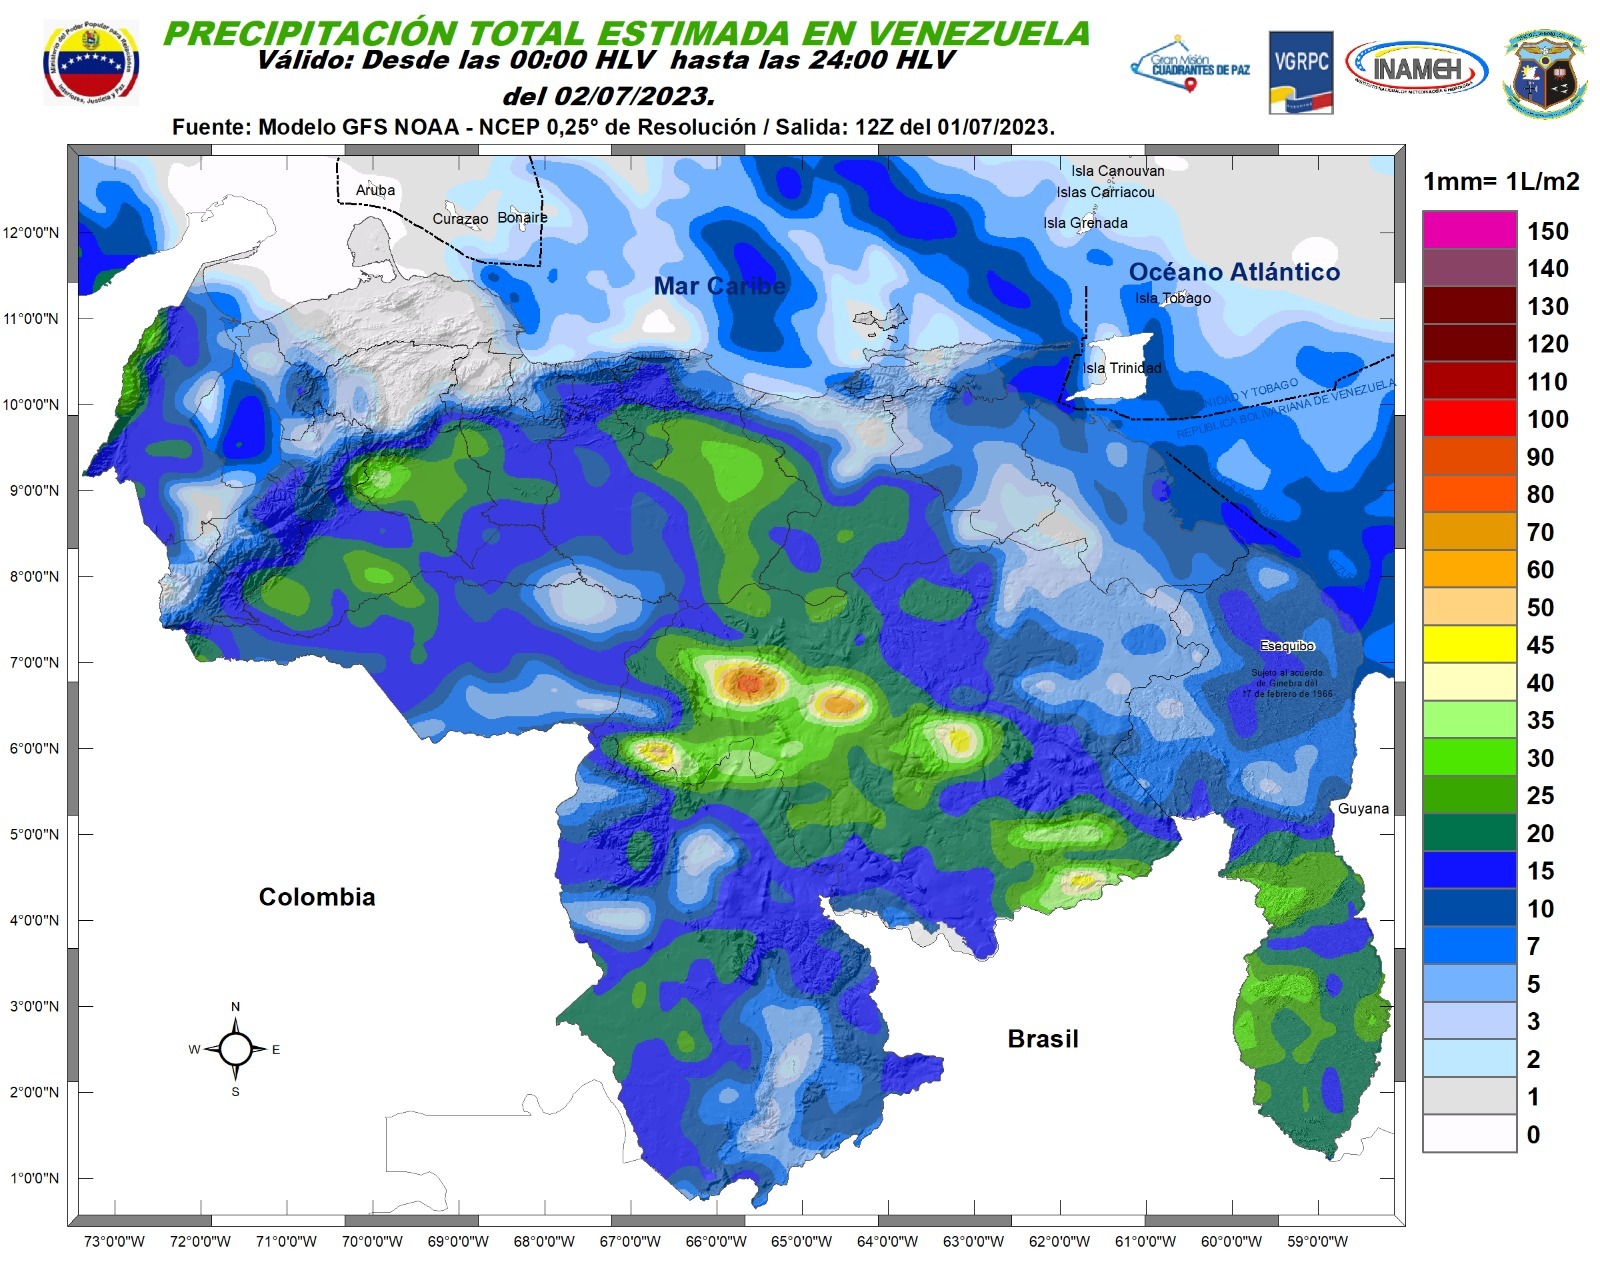 Inameh prevé lluvias y chubascos en algunas áreas de Venezuela este #2Jul